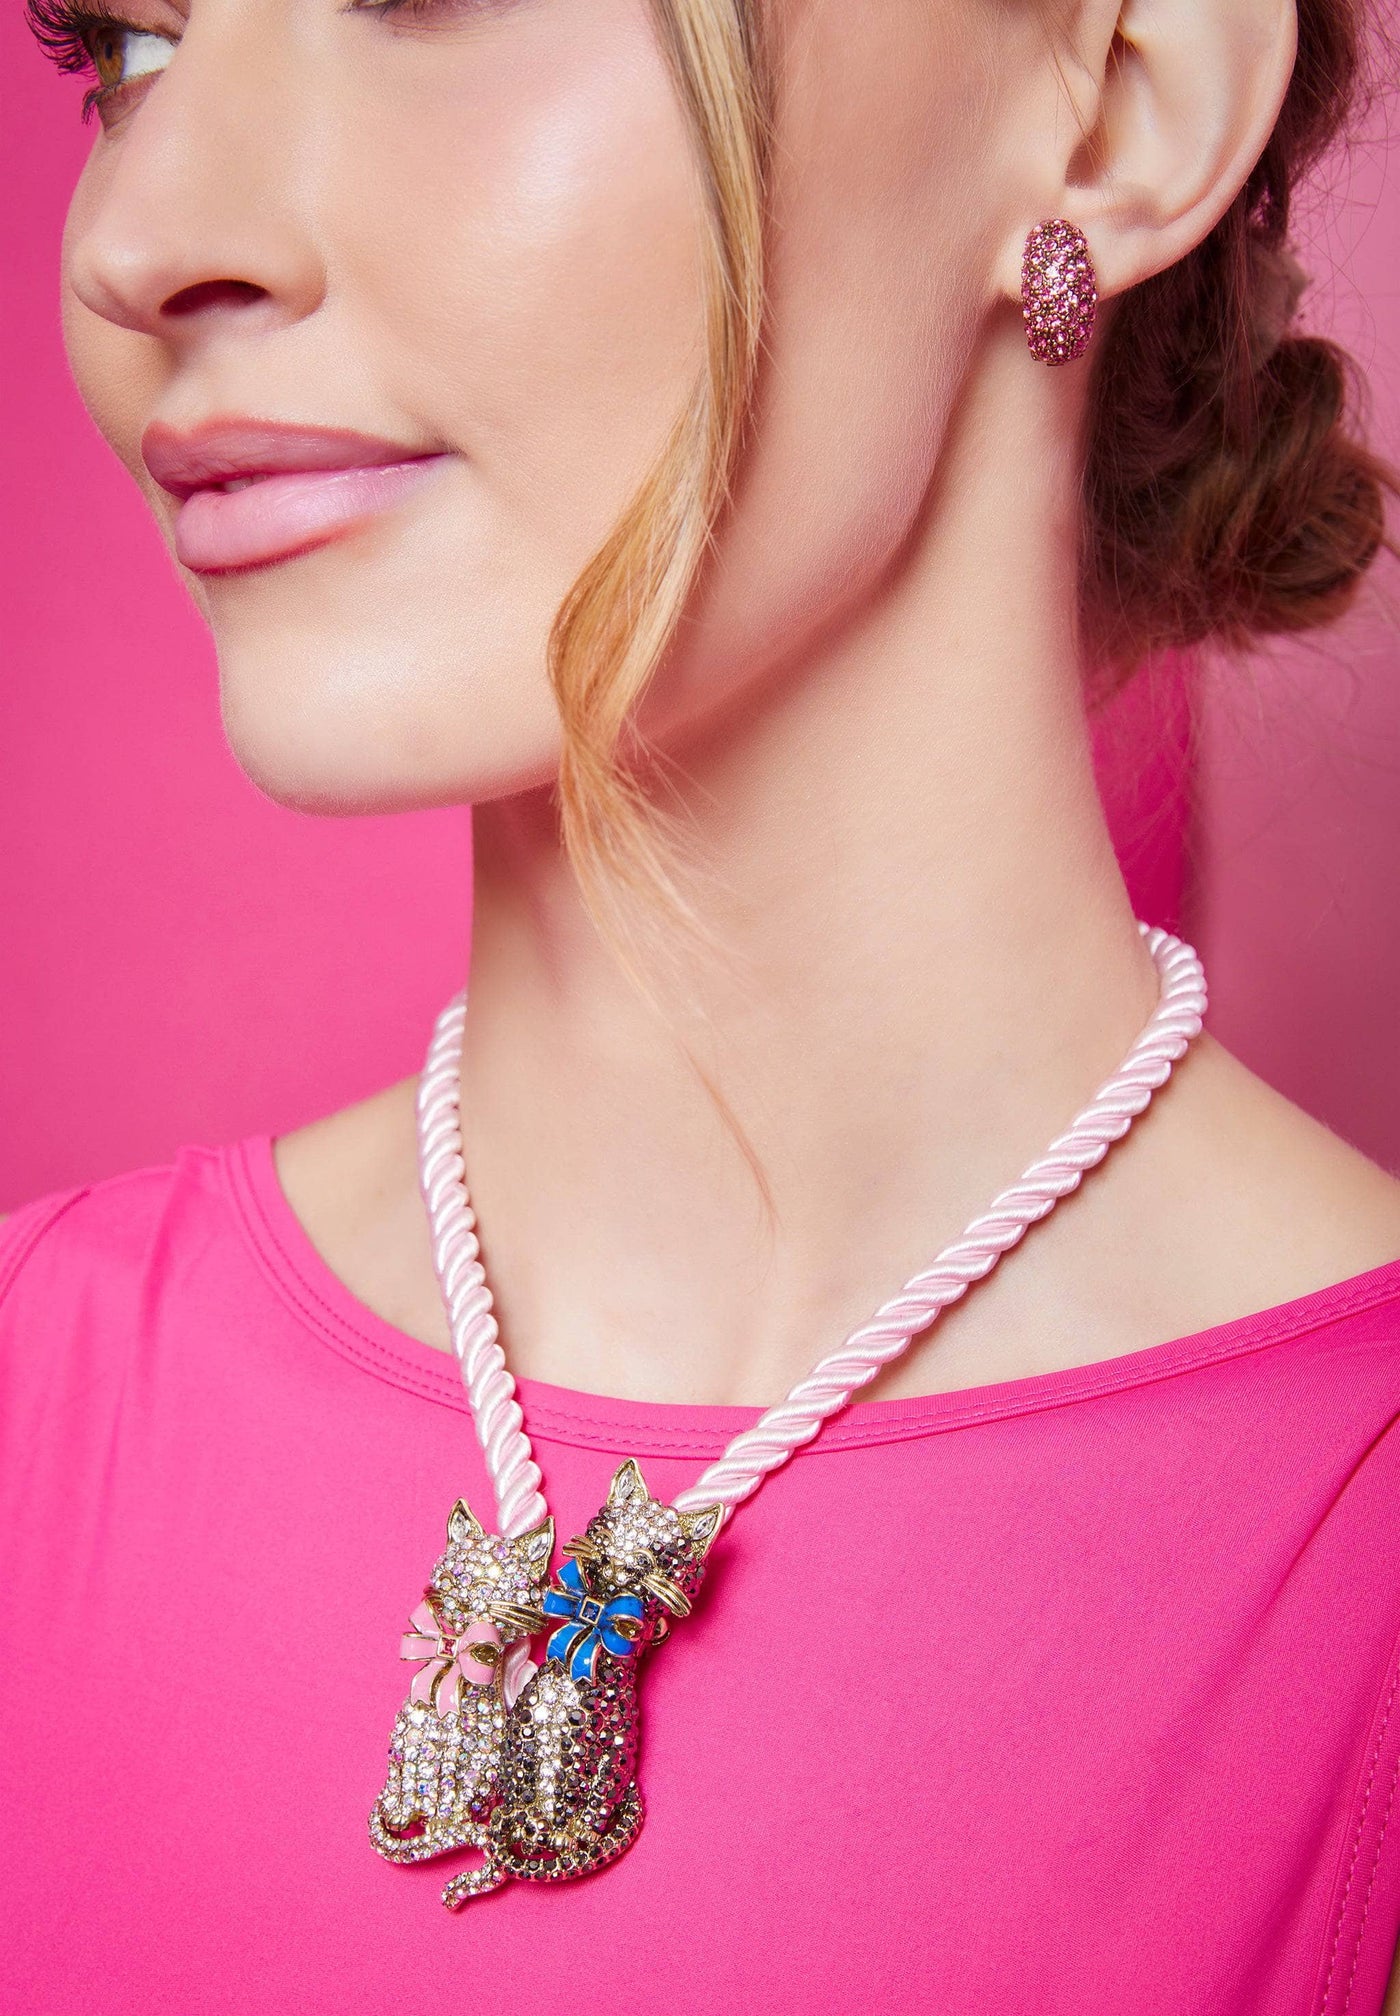 Heidi Daus®"Elegant Essentials" Pin Enhancer Cord Necklace